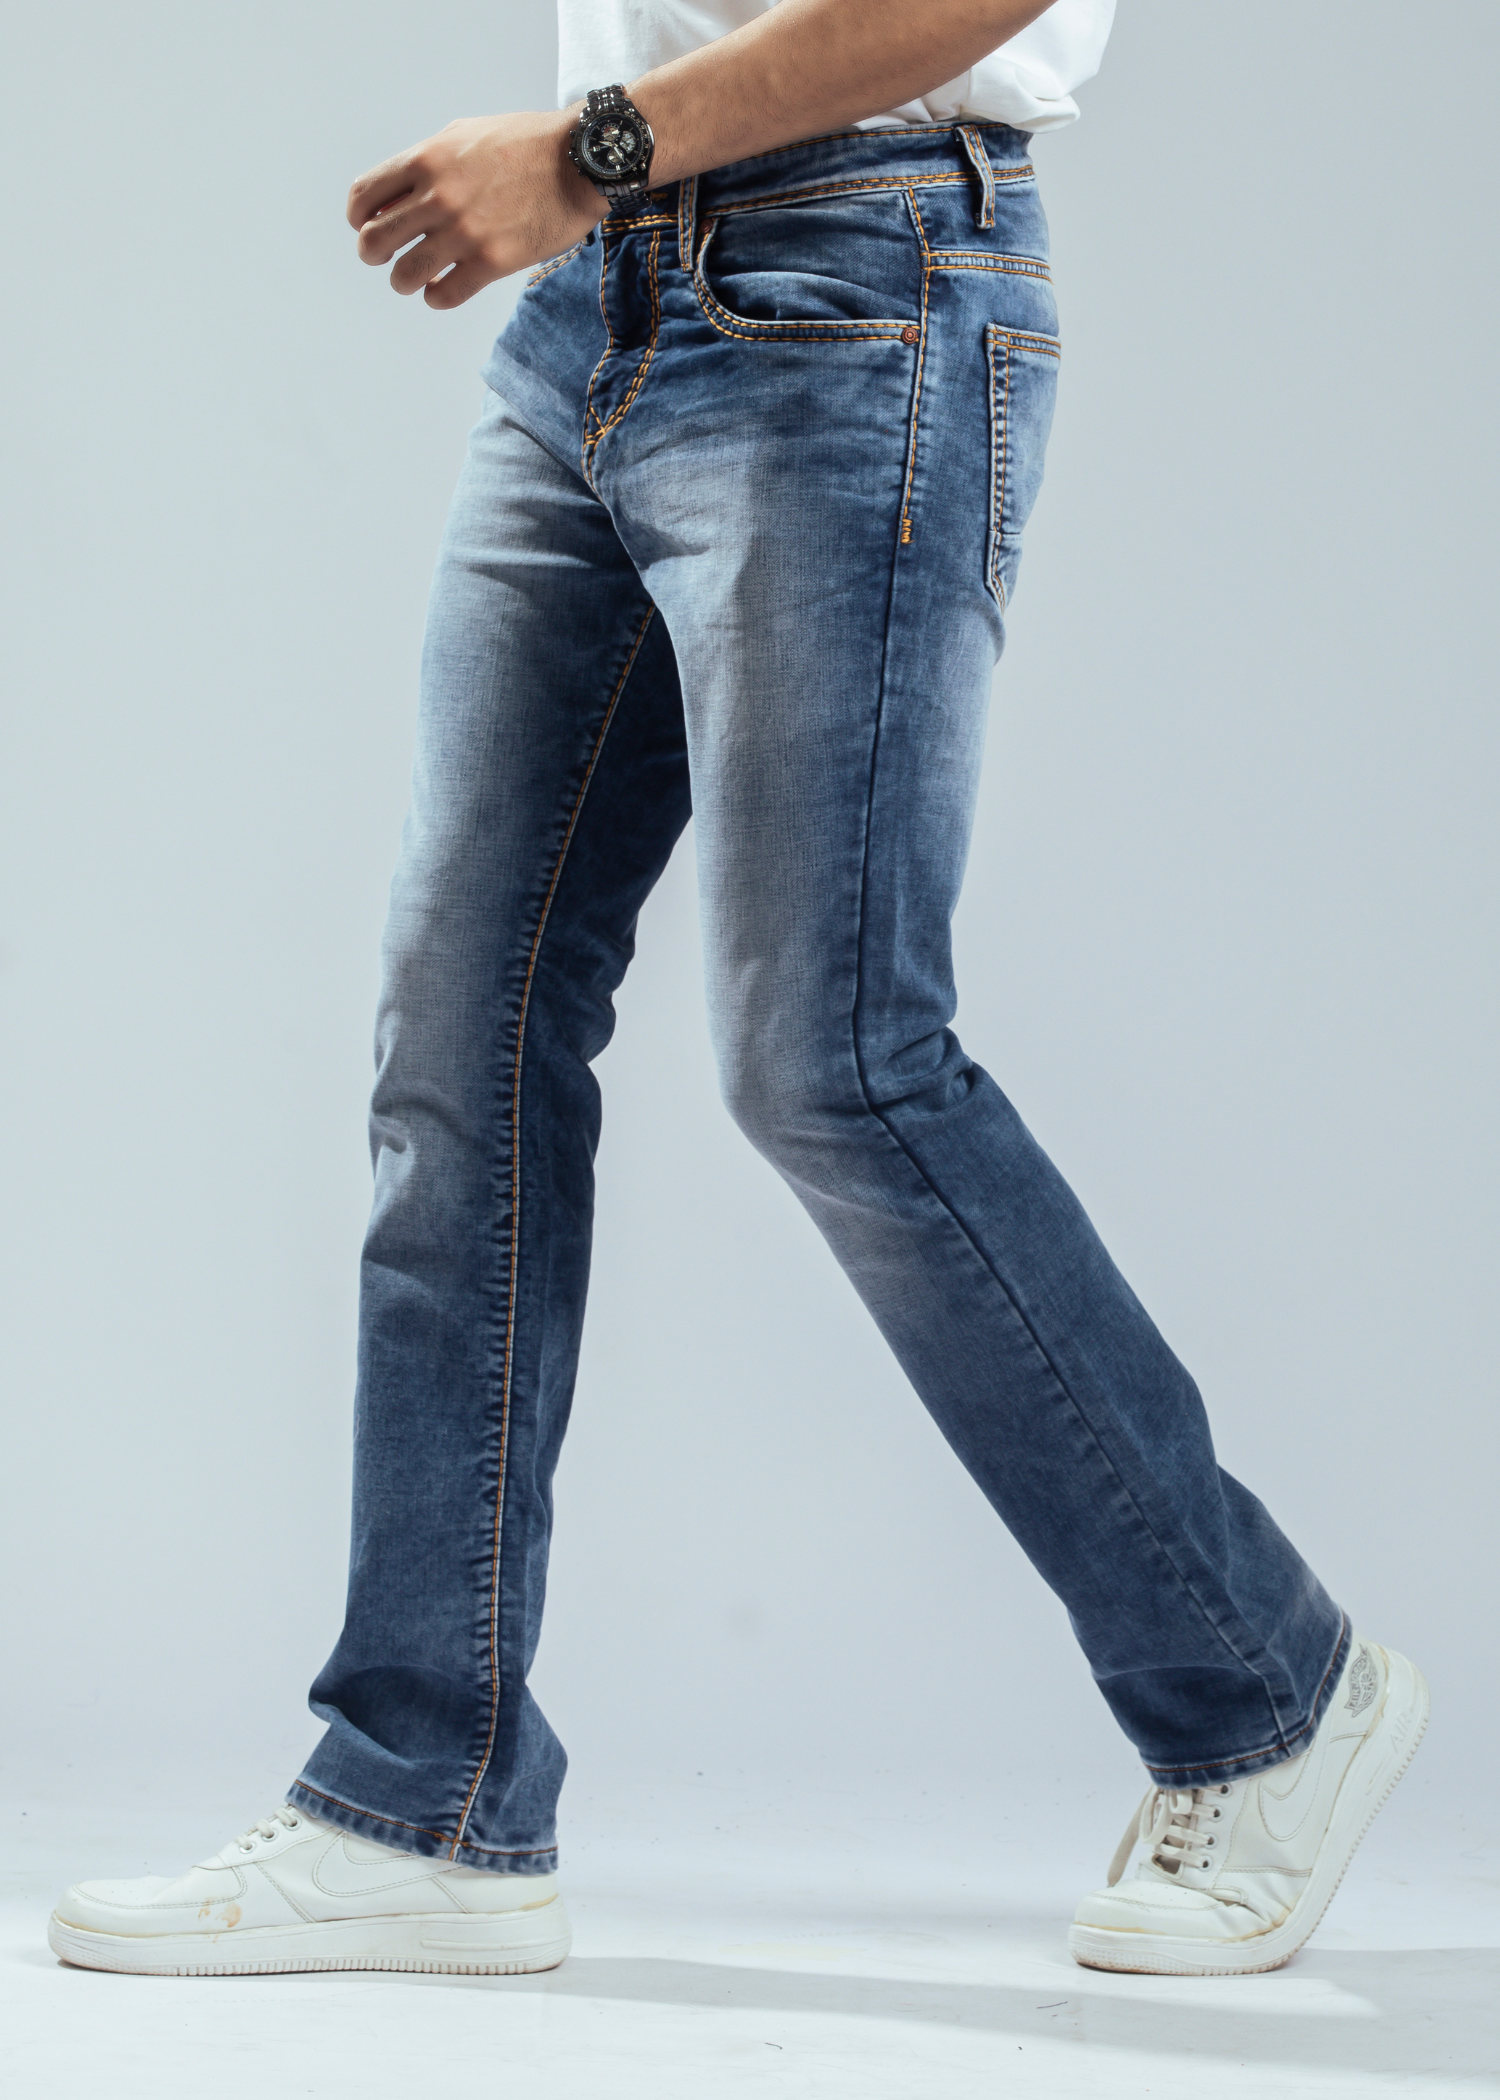 Jaxen Boot Cut Denim Jeans For Men - Nostrum